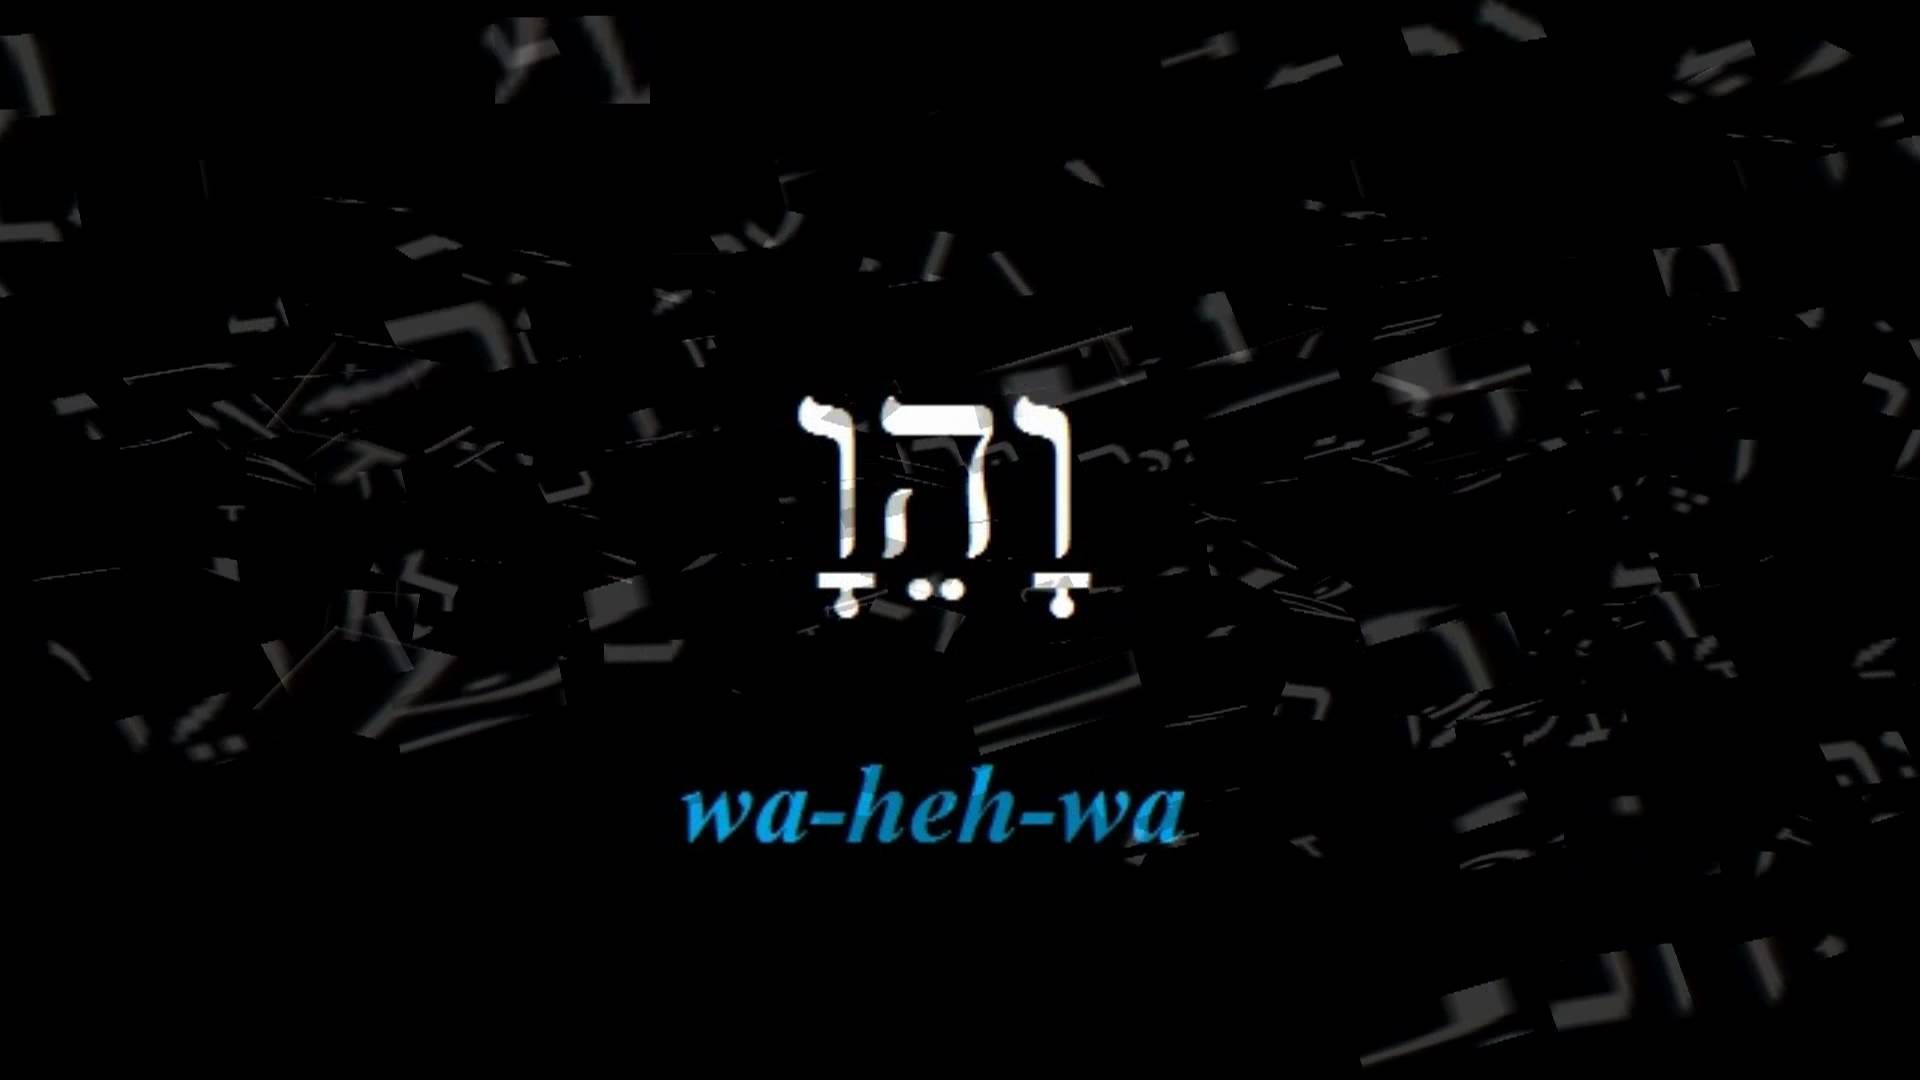 hebrew names of god pdf